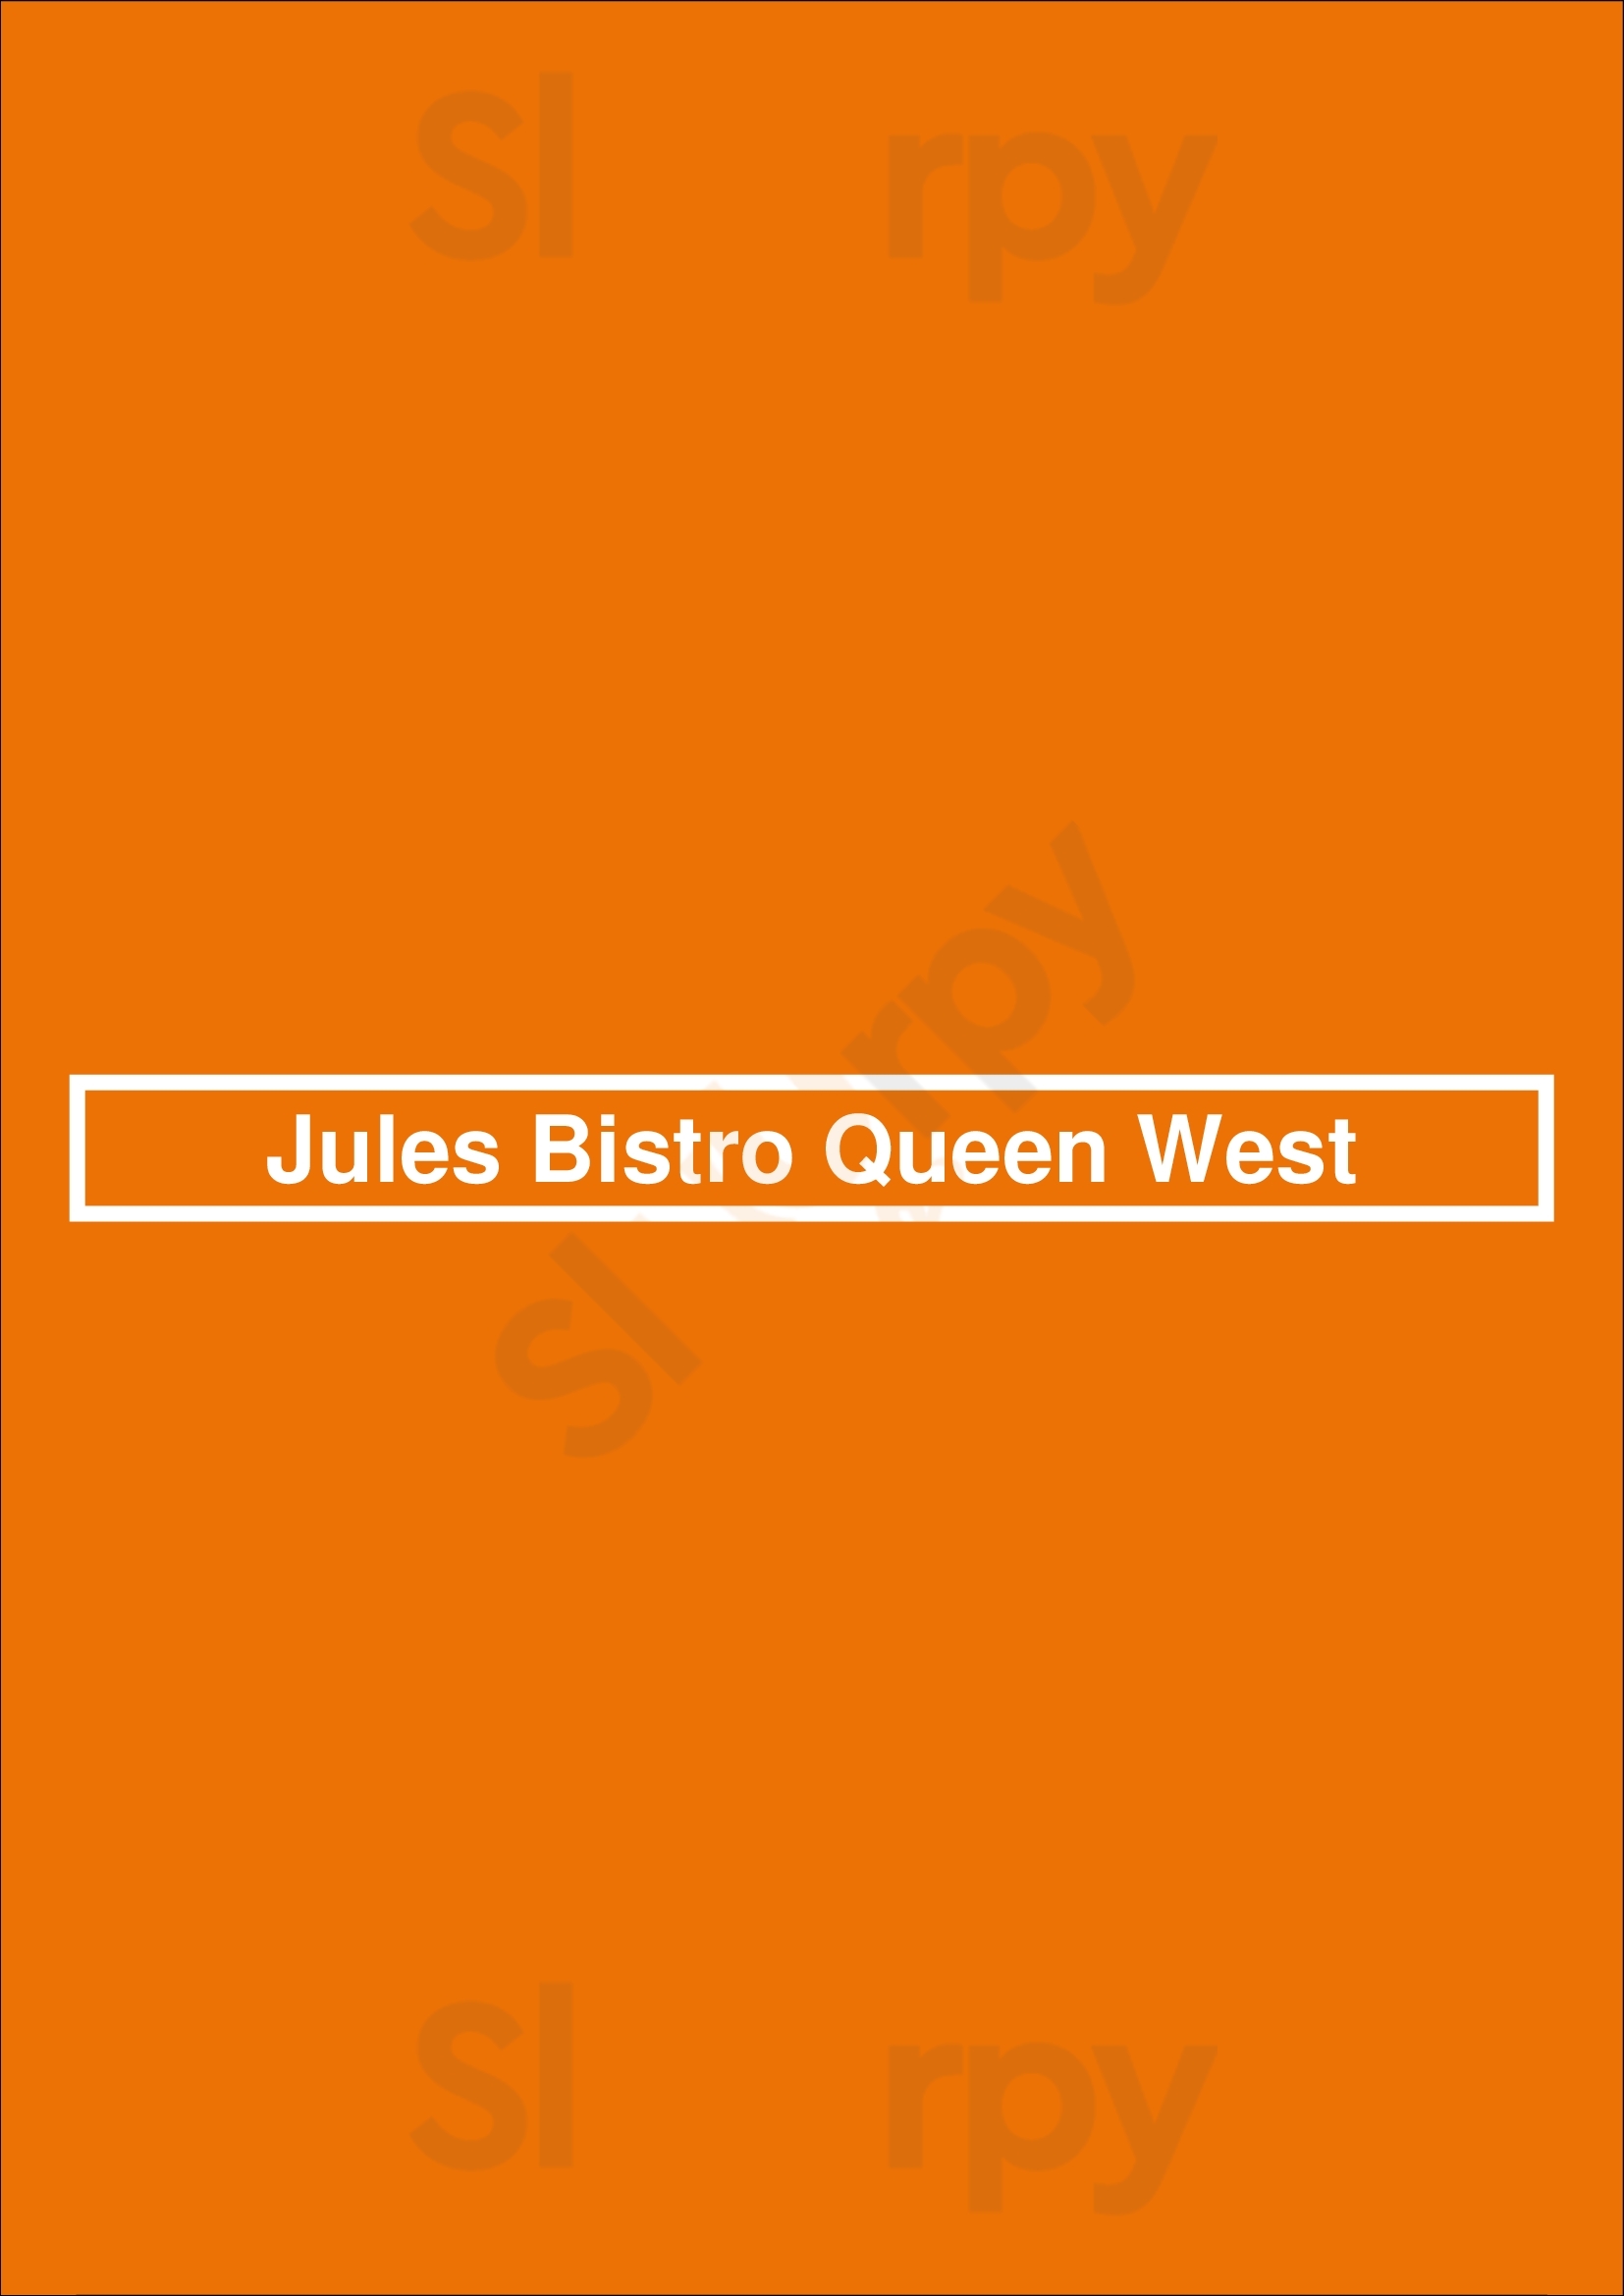 Jules Bistro Queen West Toronto Menu - 1